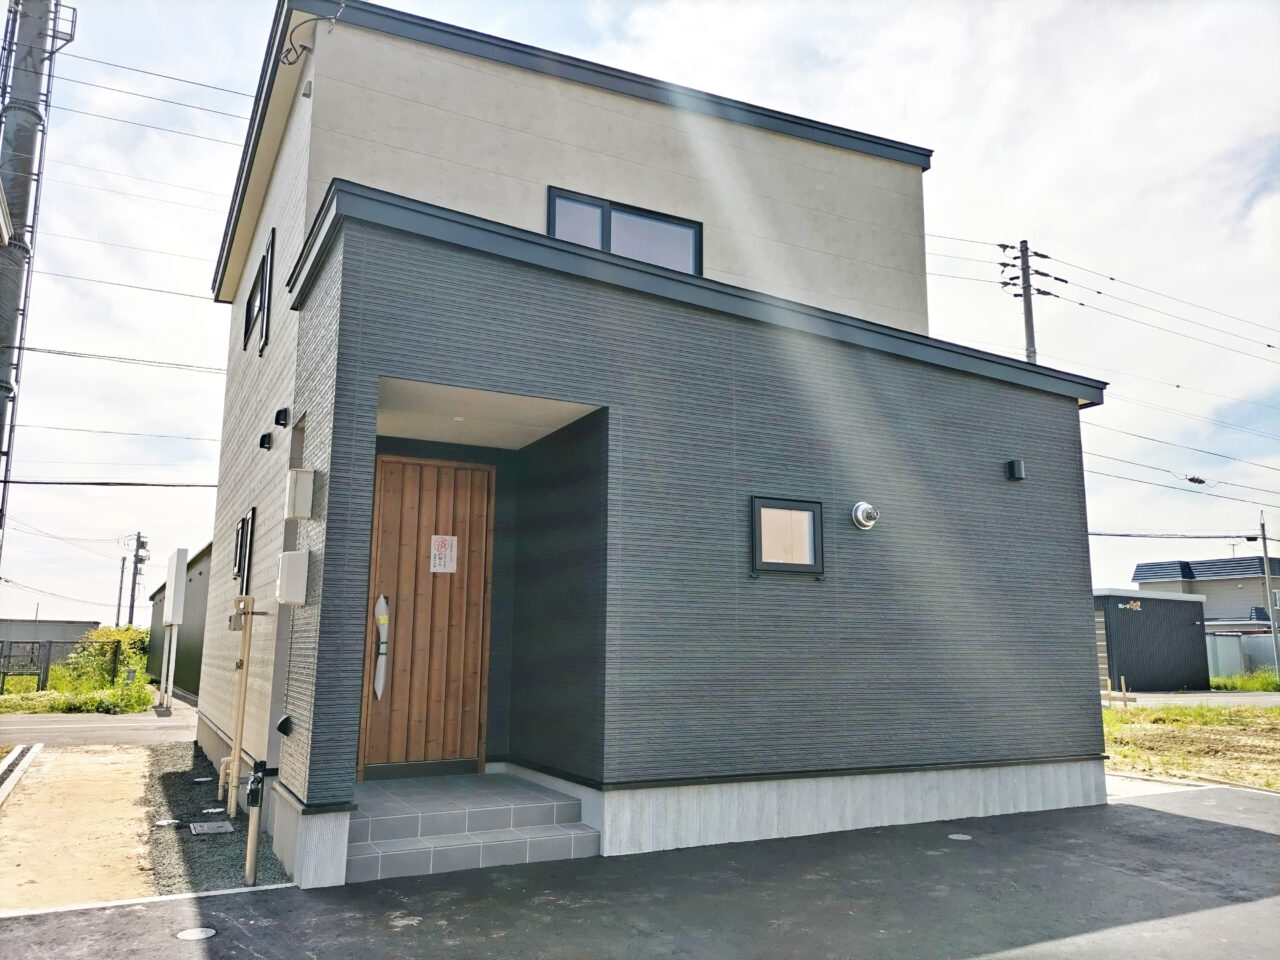 東茨戸3条1丁目(88-55)モデルハウス<br>＜公開中＞🏠即入居可能🏠 1